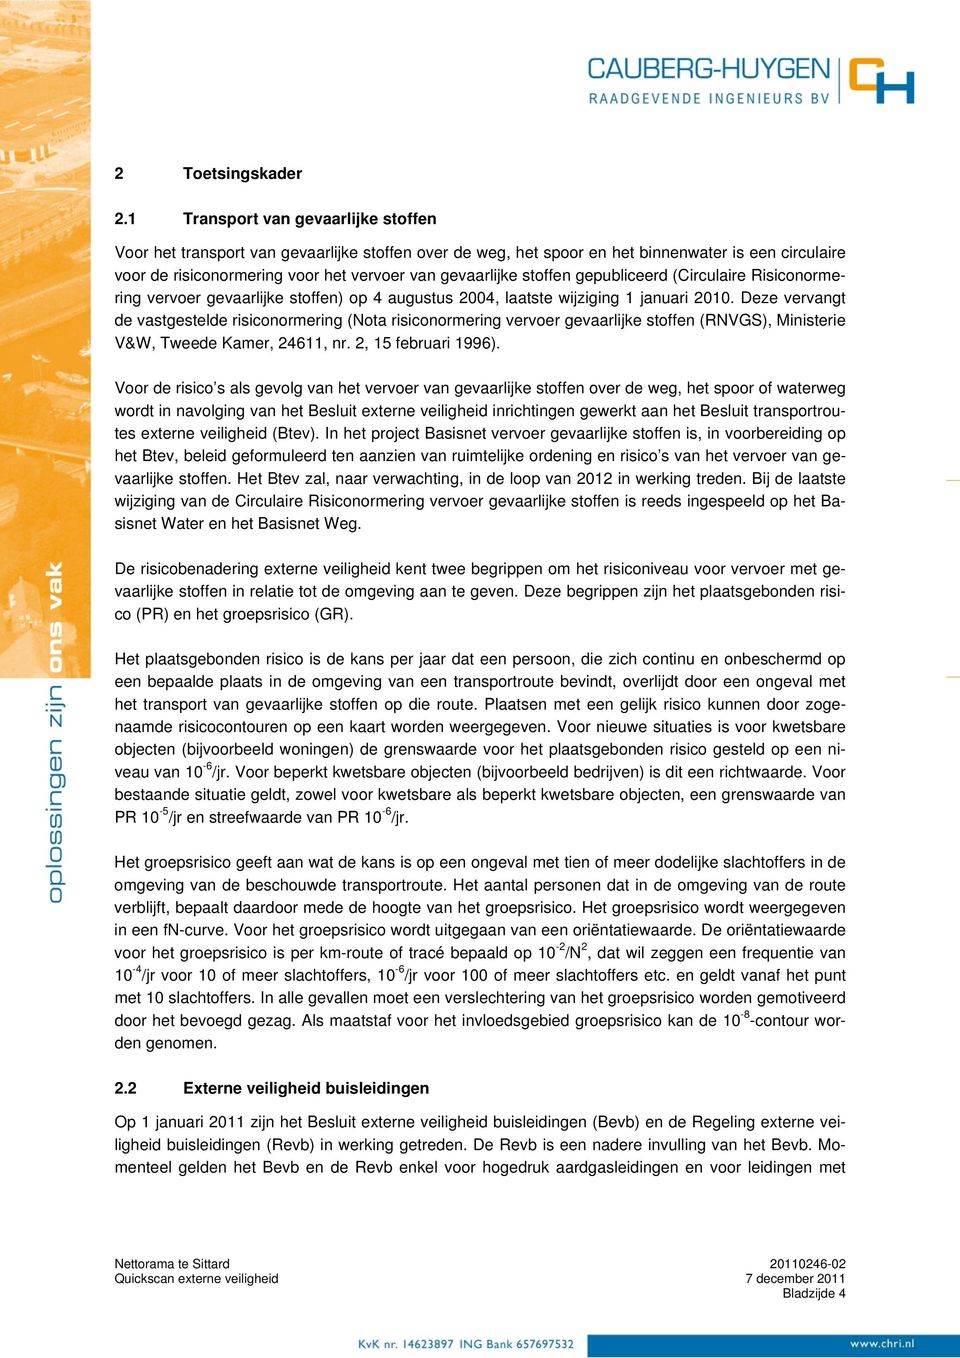 stoffen gepubliceerd (Circulaire Risiconormering vervoer gevaarlijke stoffen) op 4 augustus 2004, laatste wijziging 1 januari 2010.